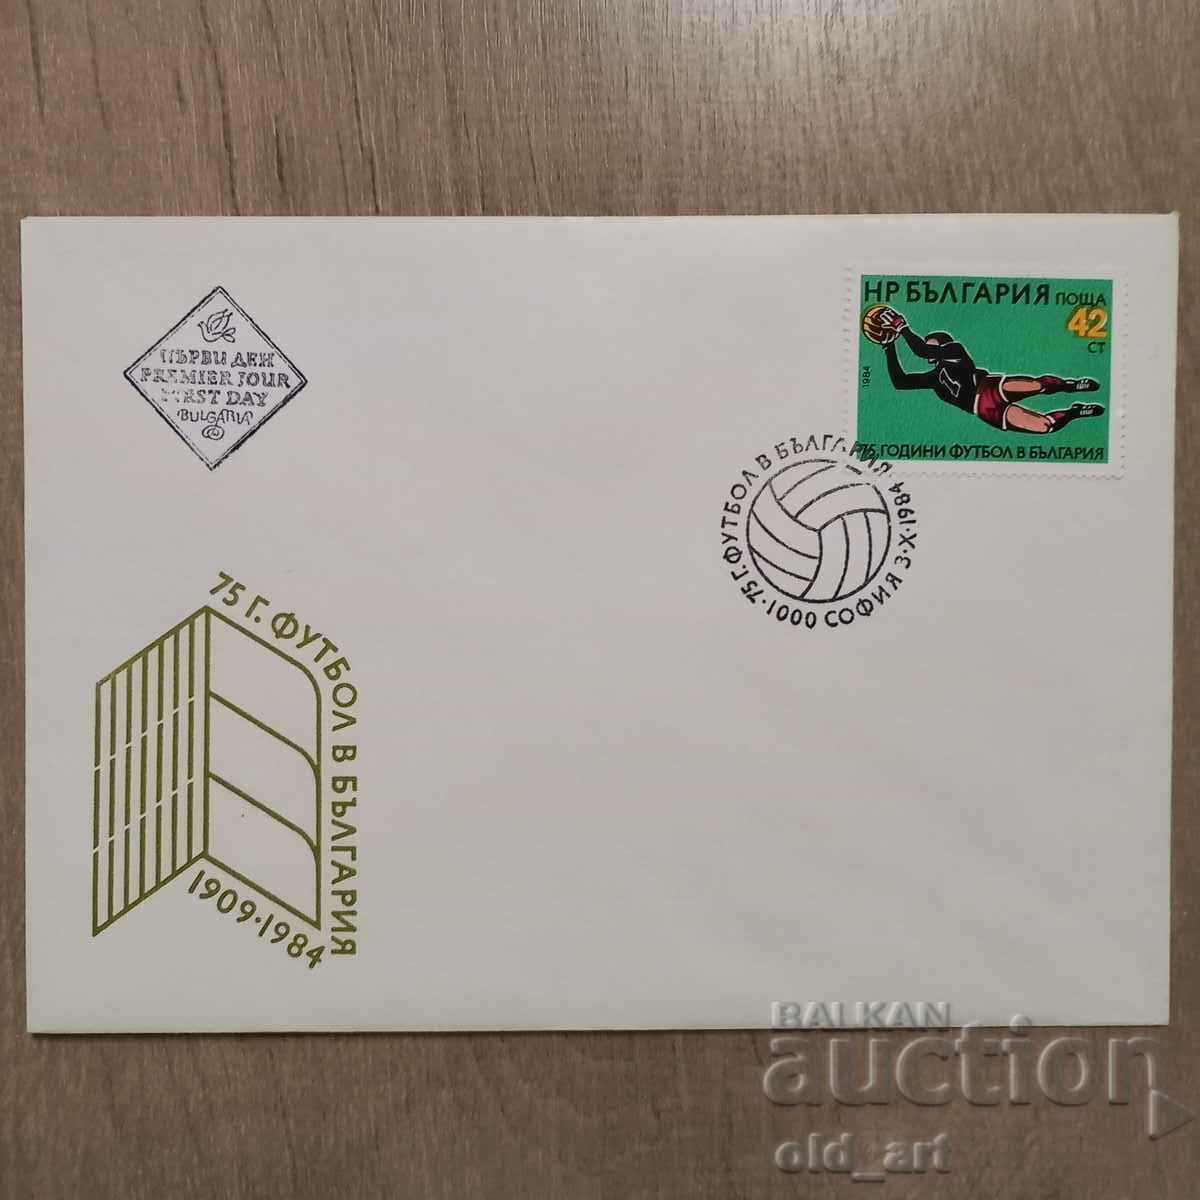 Ταχυδρομικός φάκελος - 75 χρόνια ποδοσφαίρου στη Βουλγαρία